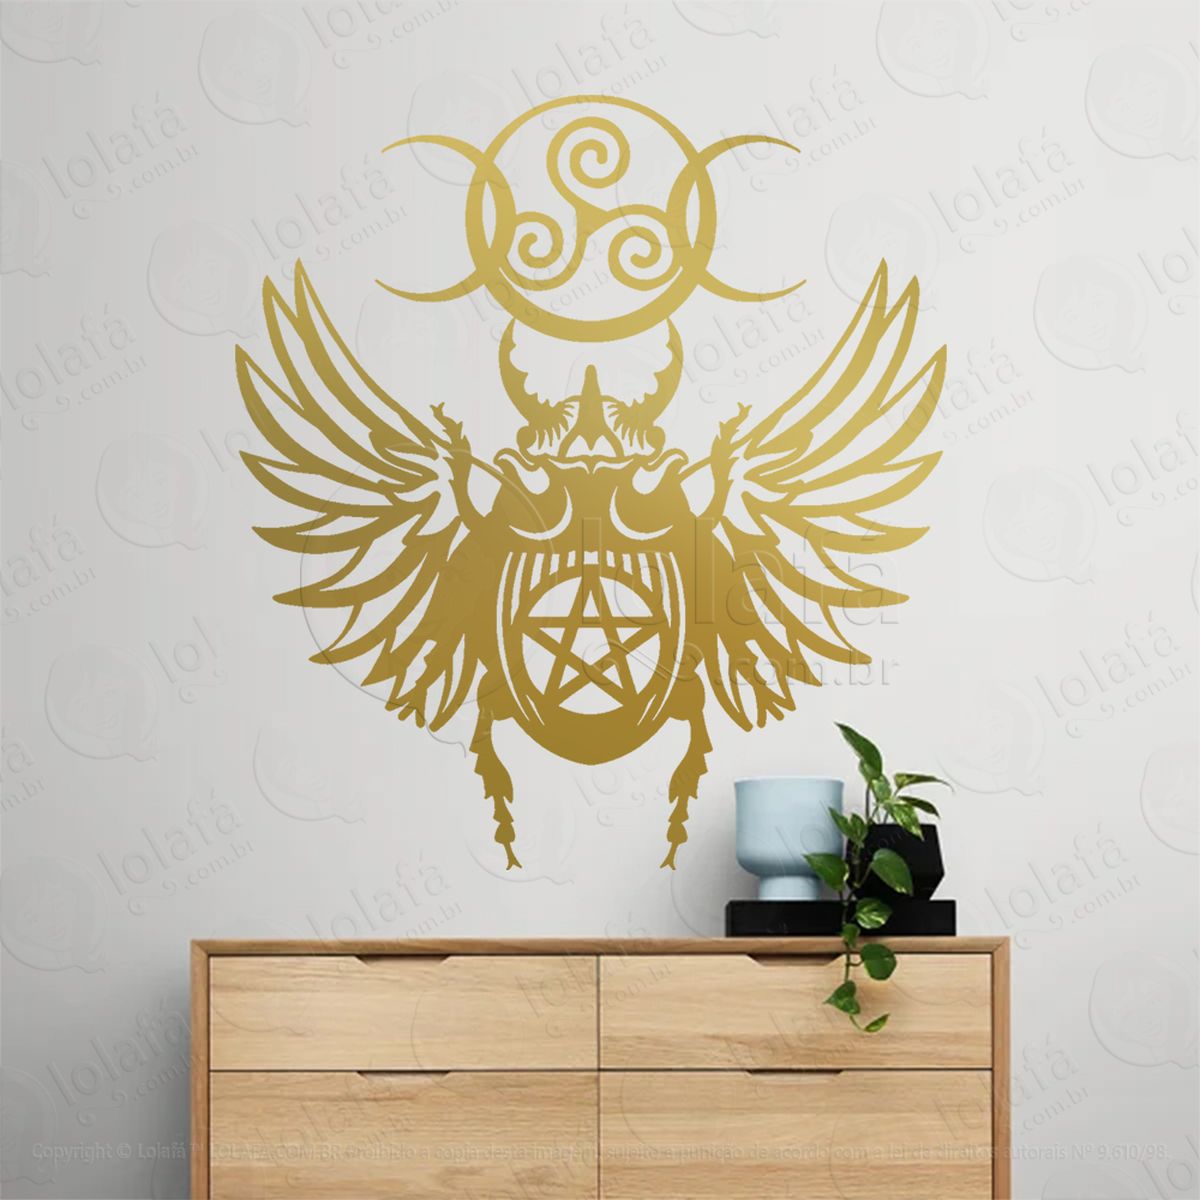 escaravelho com símbolo celta e pentagrama adesivo de parede decorativo para casa, sala, quarto, vidro e altar ocultista - mod:291